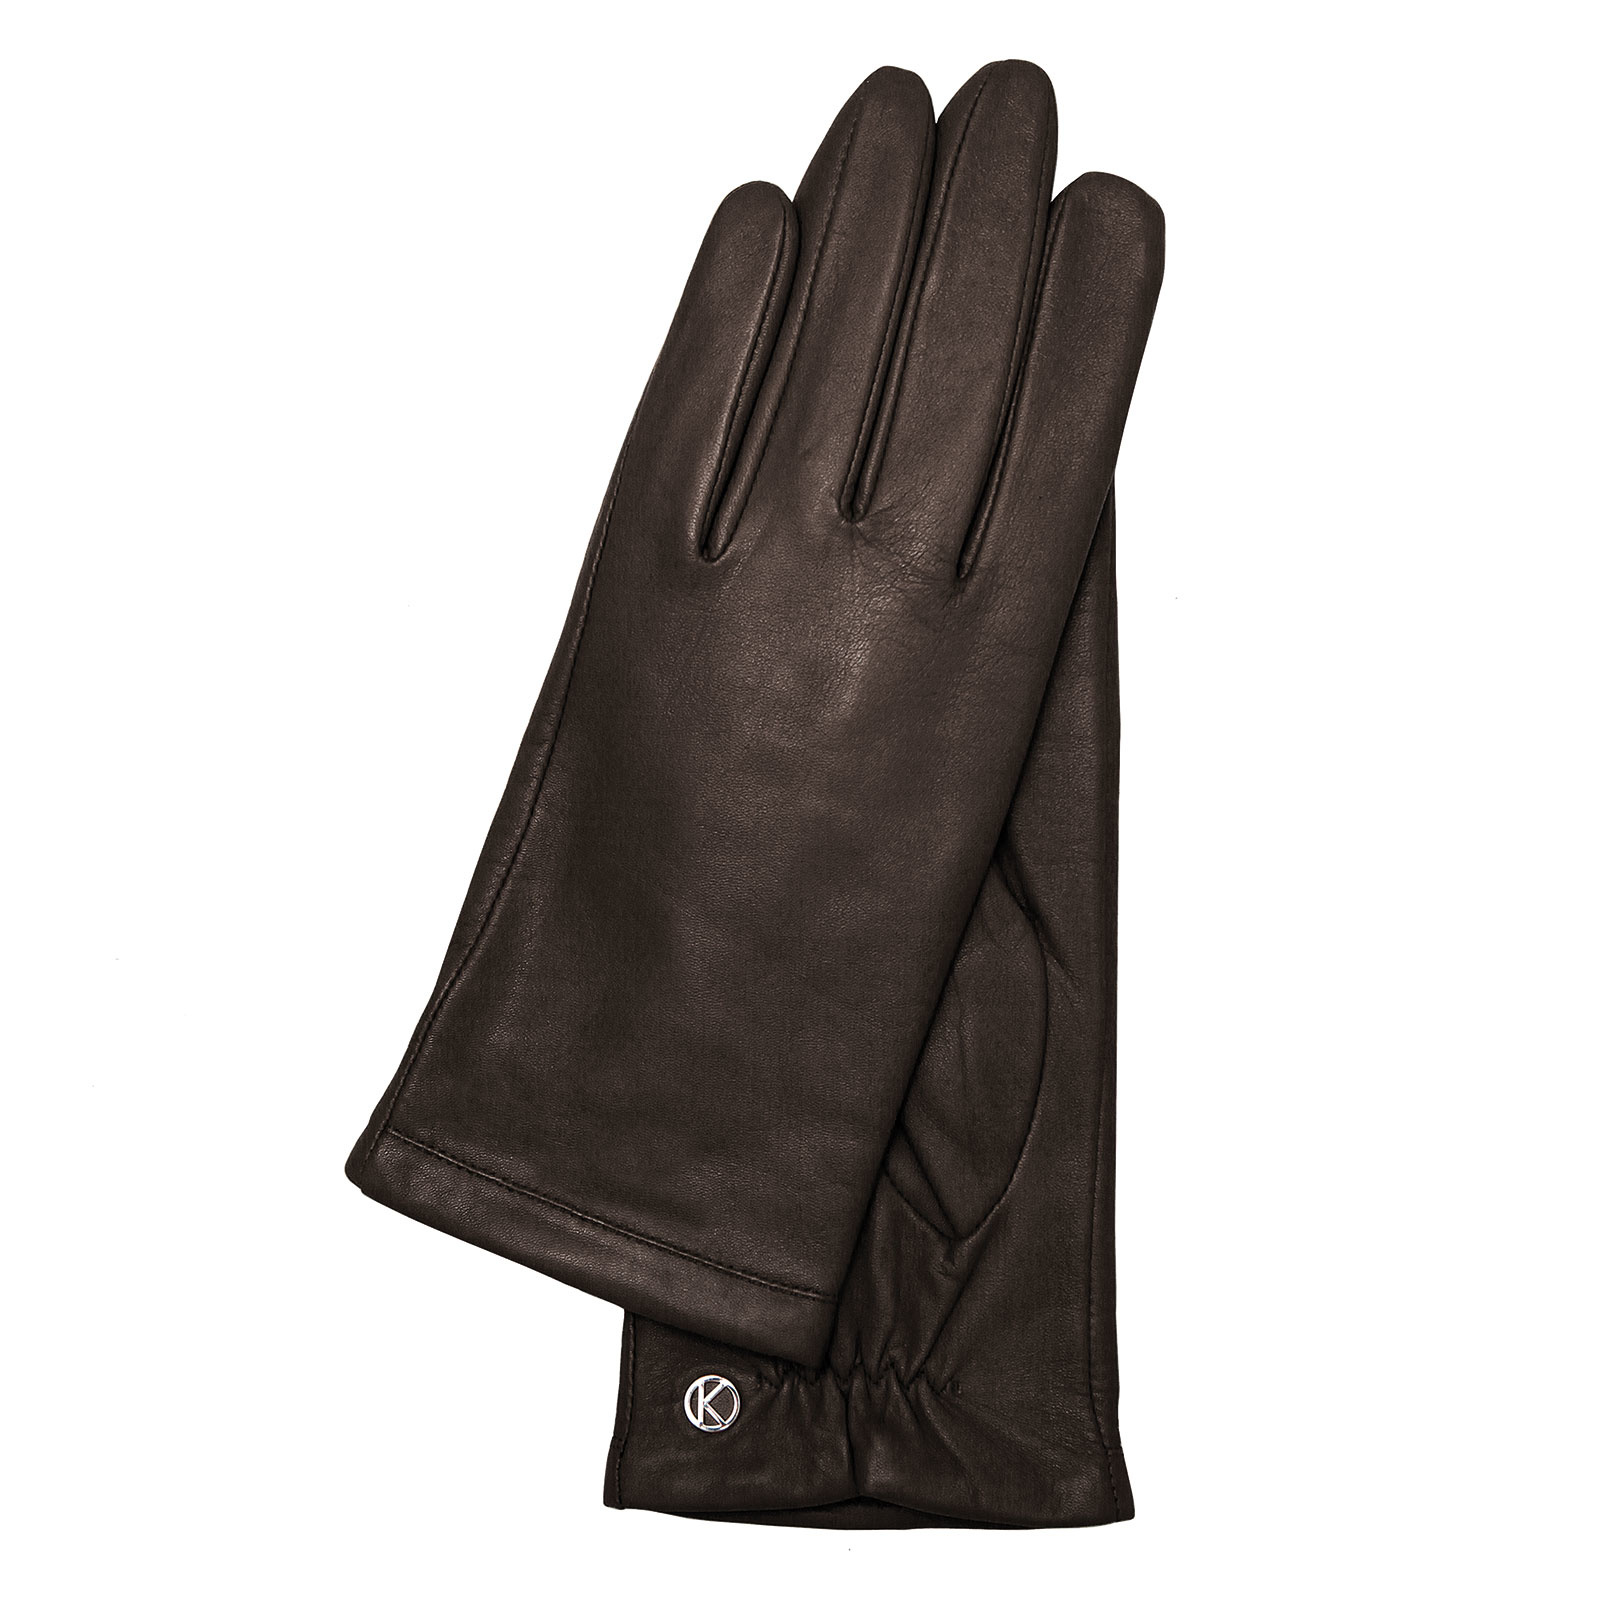 Leather Handschuhe Schwarz Weiches Damen Leder Barneys -